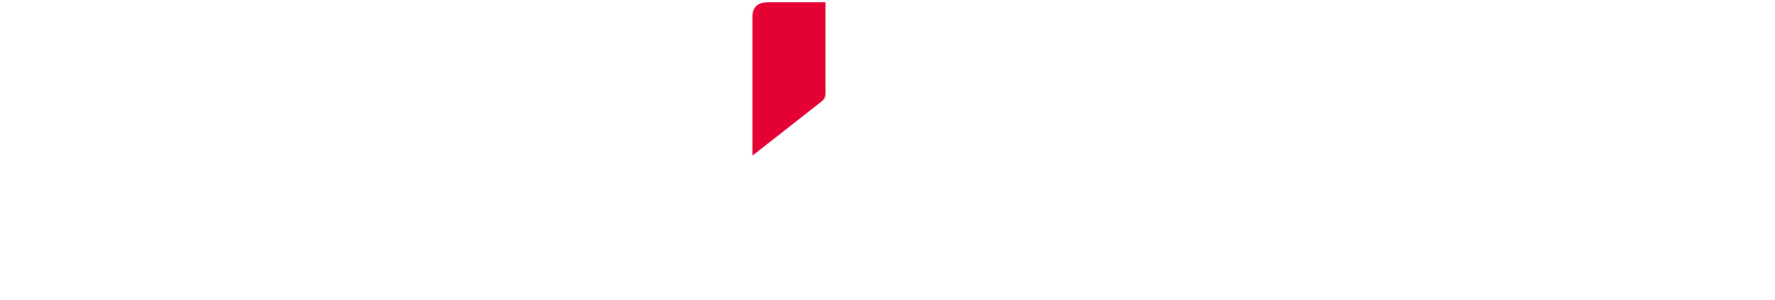 Fujifilm Logo Logodix